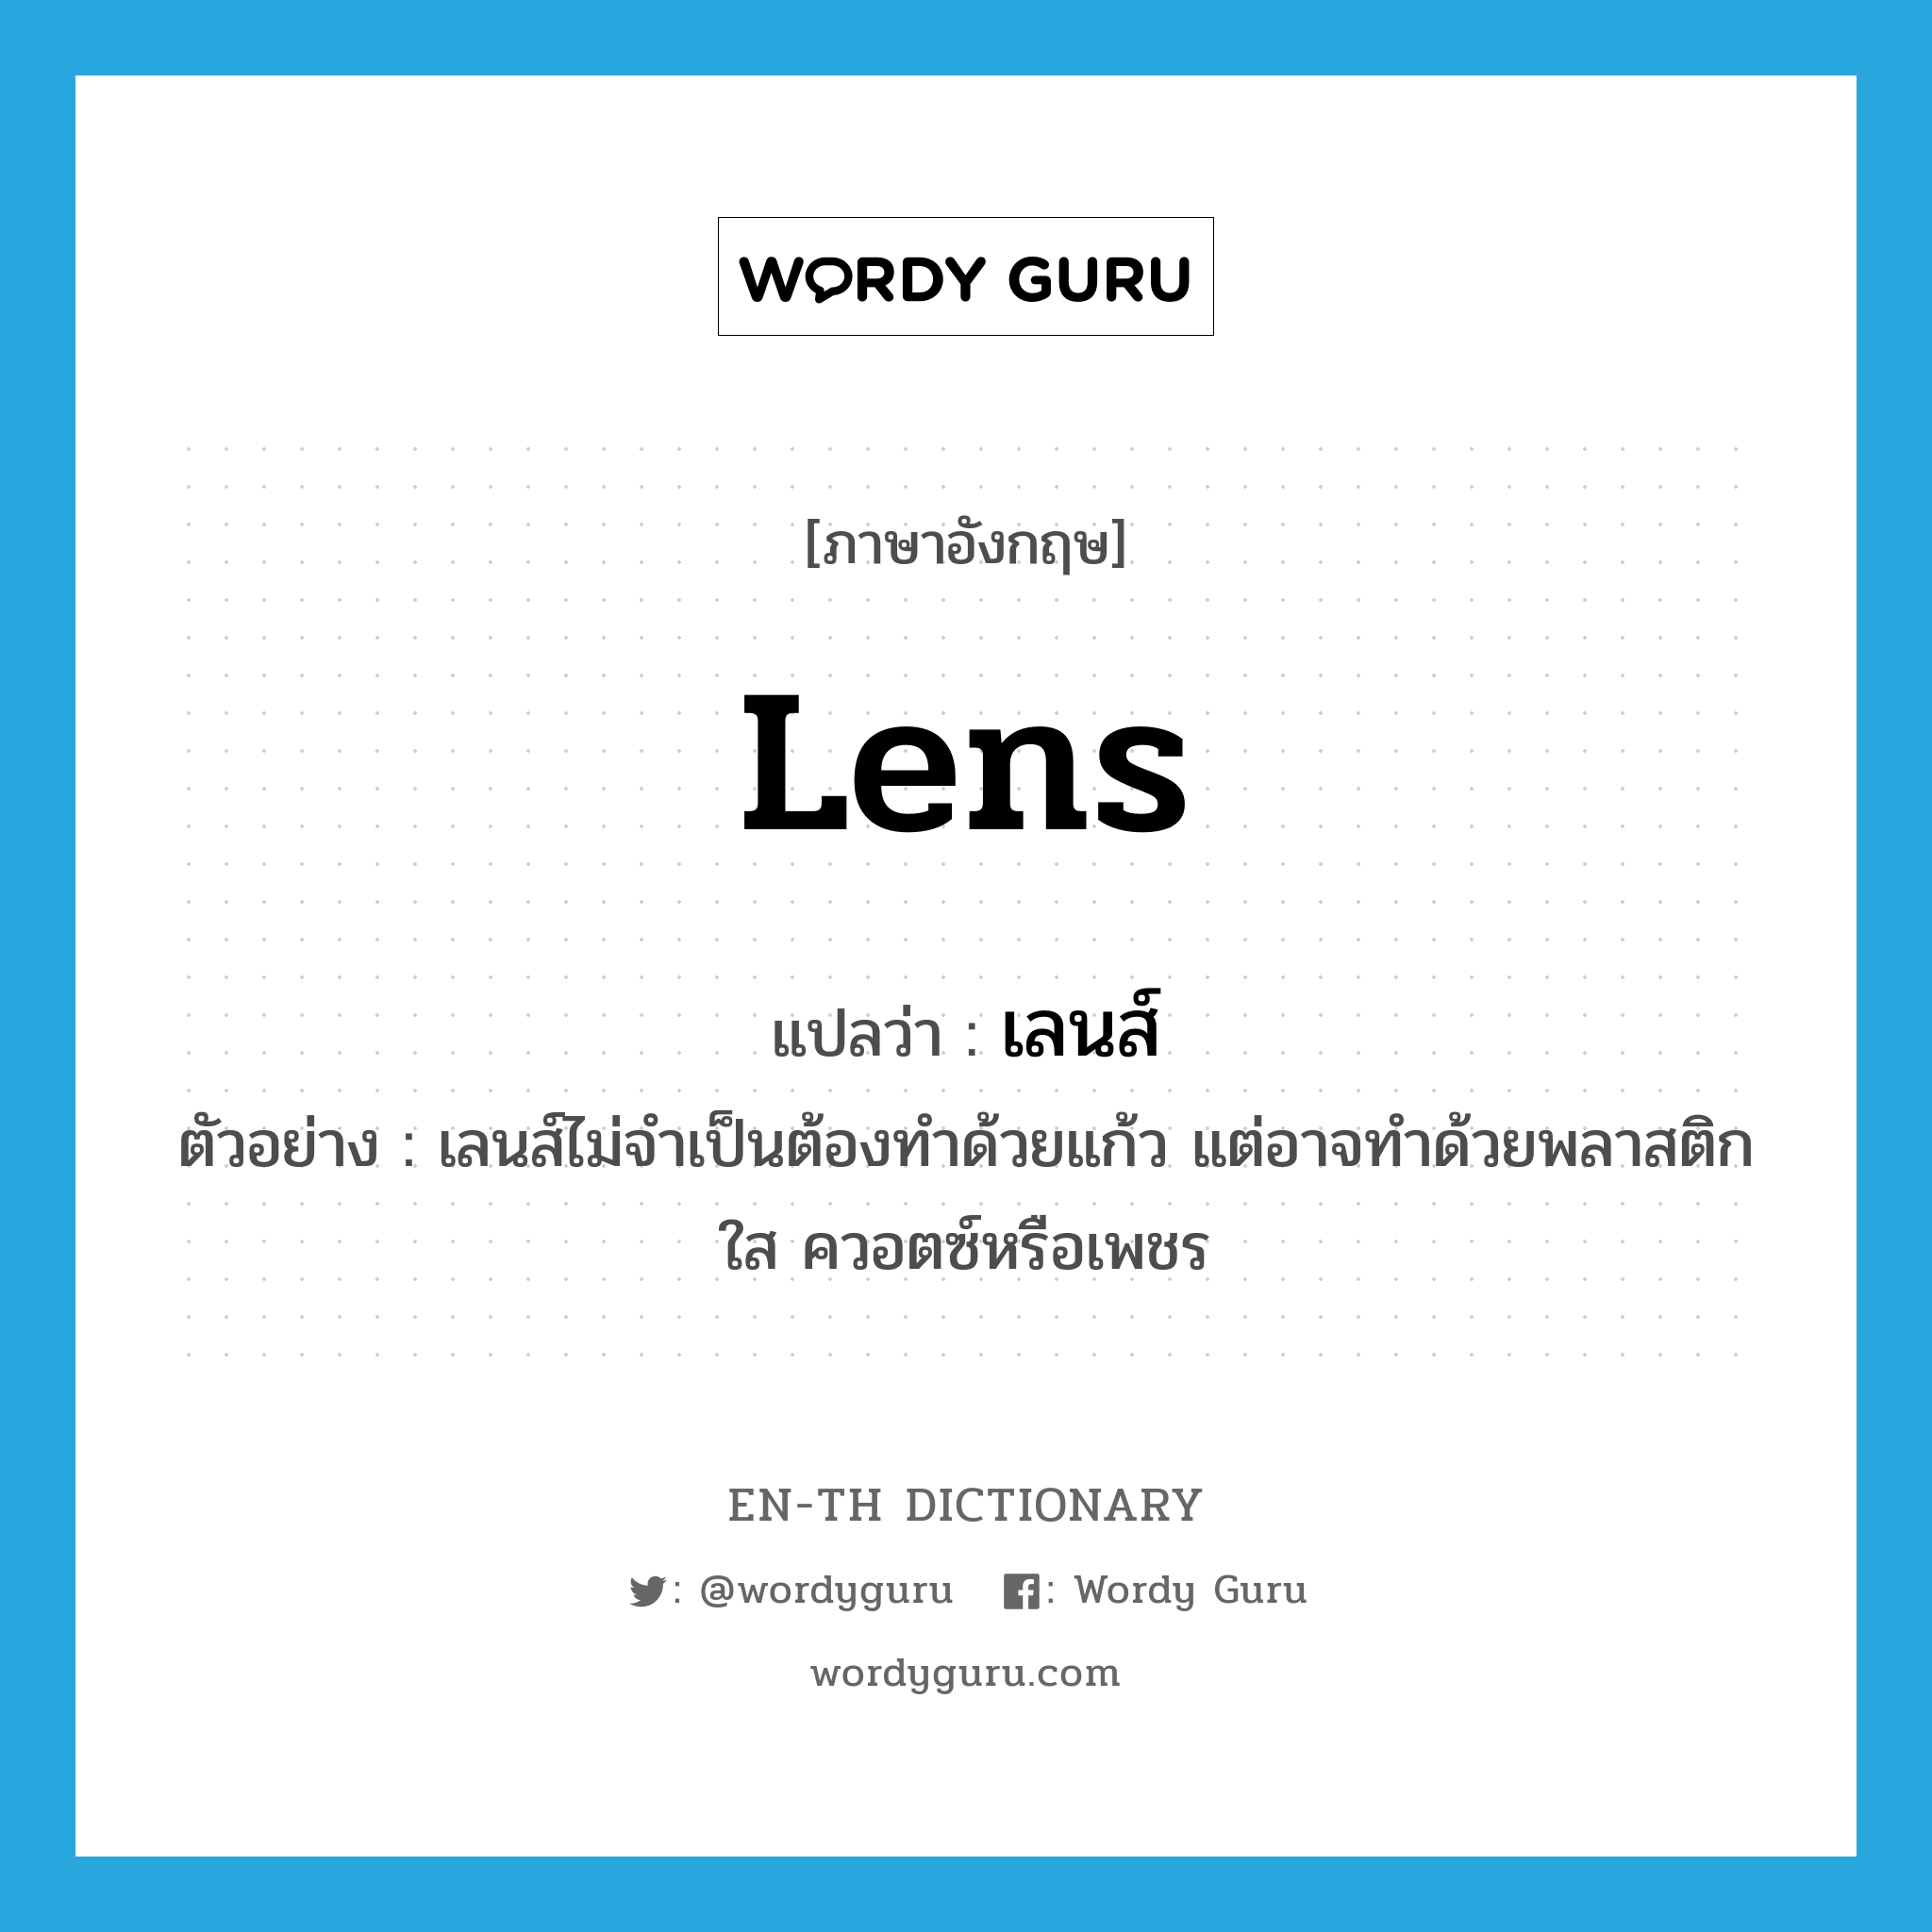 เลนส์ ภาษาอังกฤษ?, คำศัพท์ภาษาอังกฤษ เลนส์ แปลว่า lens ประเภท N ตัวอย่าง เลนส์ไม่จำเป็นต้องทำด้วยแก้ว แต่อาจทำด้วยพลาสติกใส ควอตซ์หรือเพชร หมวด N